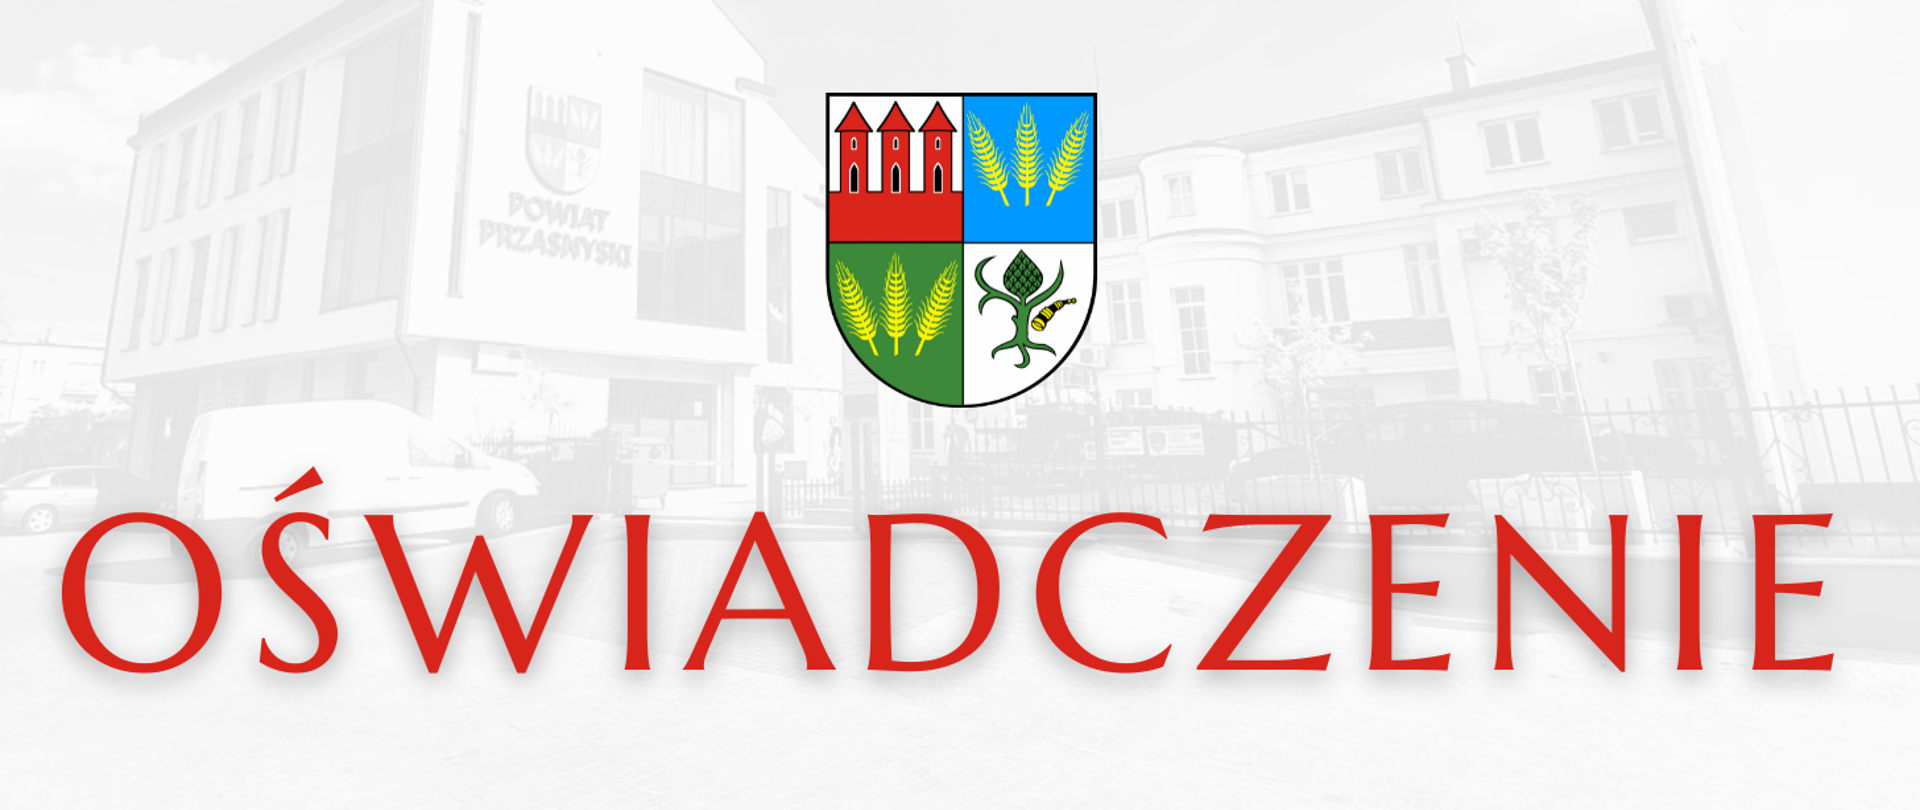 Grafika z herbem Powiatu Przasnyskiego u góry oraz czerwonym napisem "oświadczenie" u dołu.